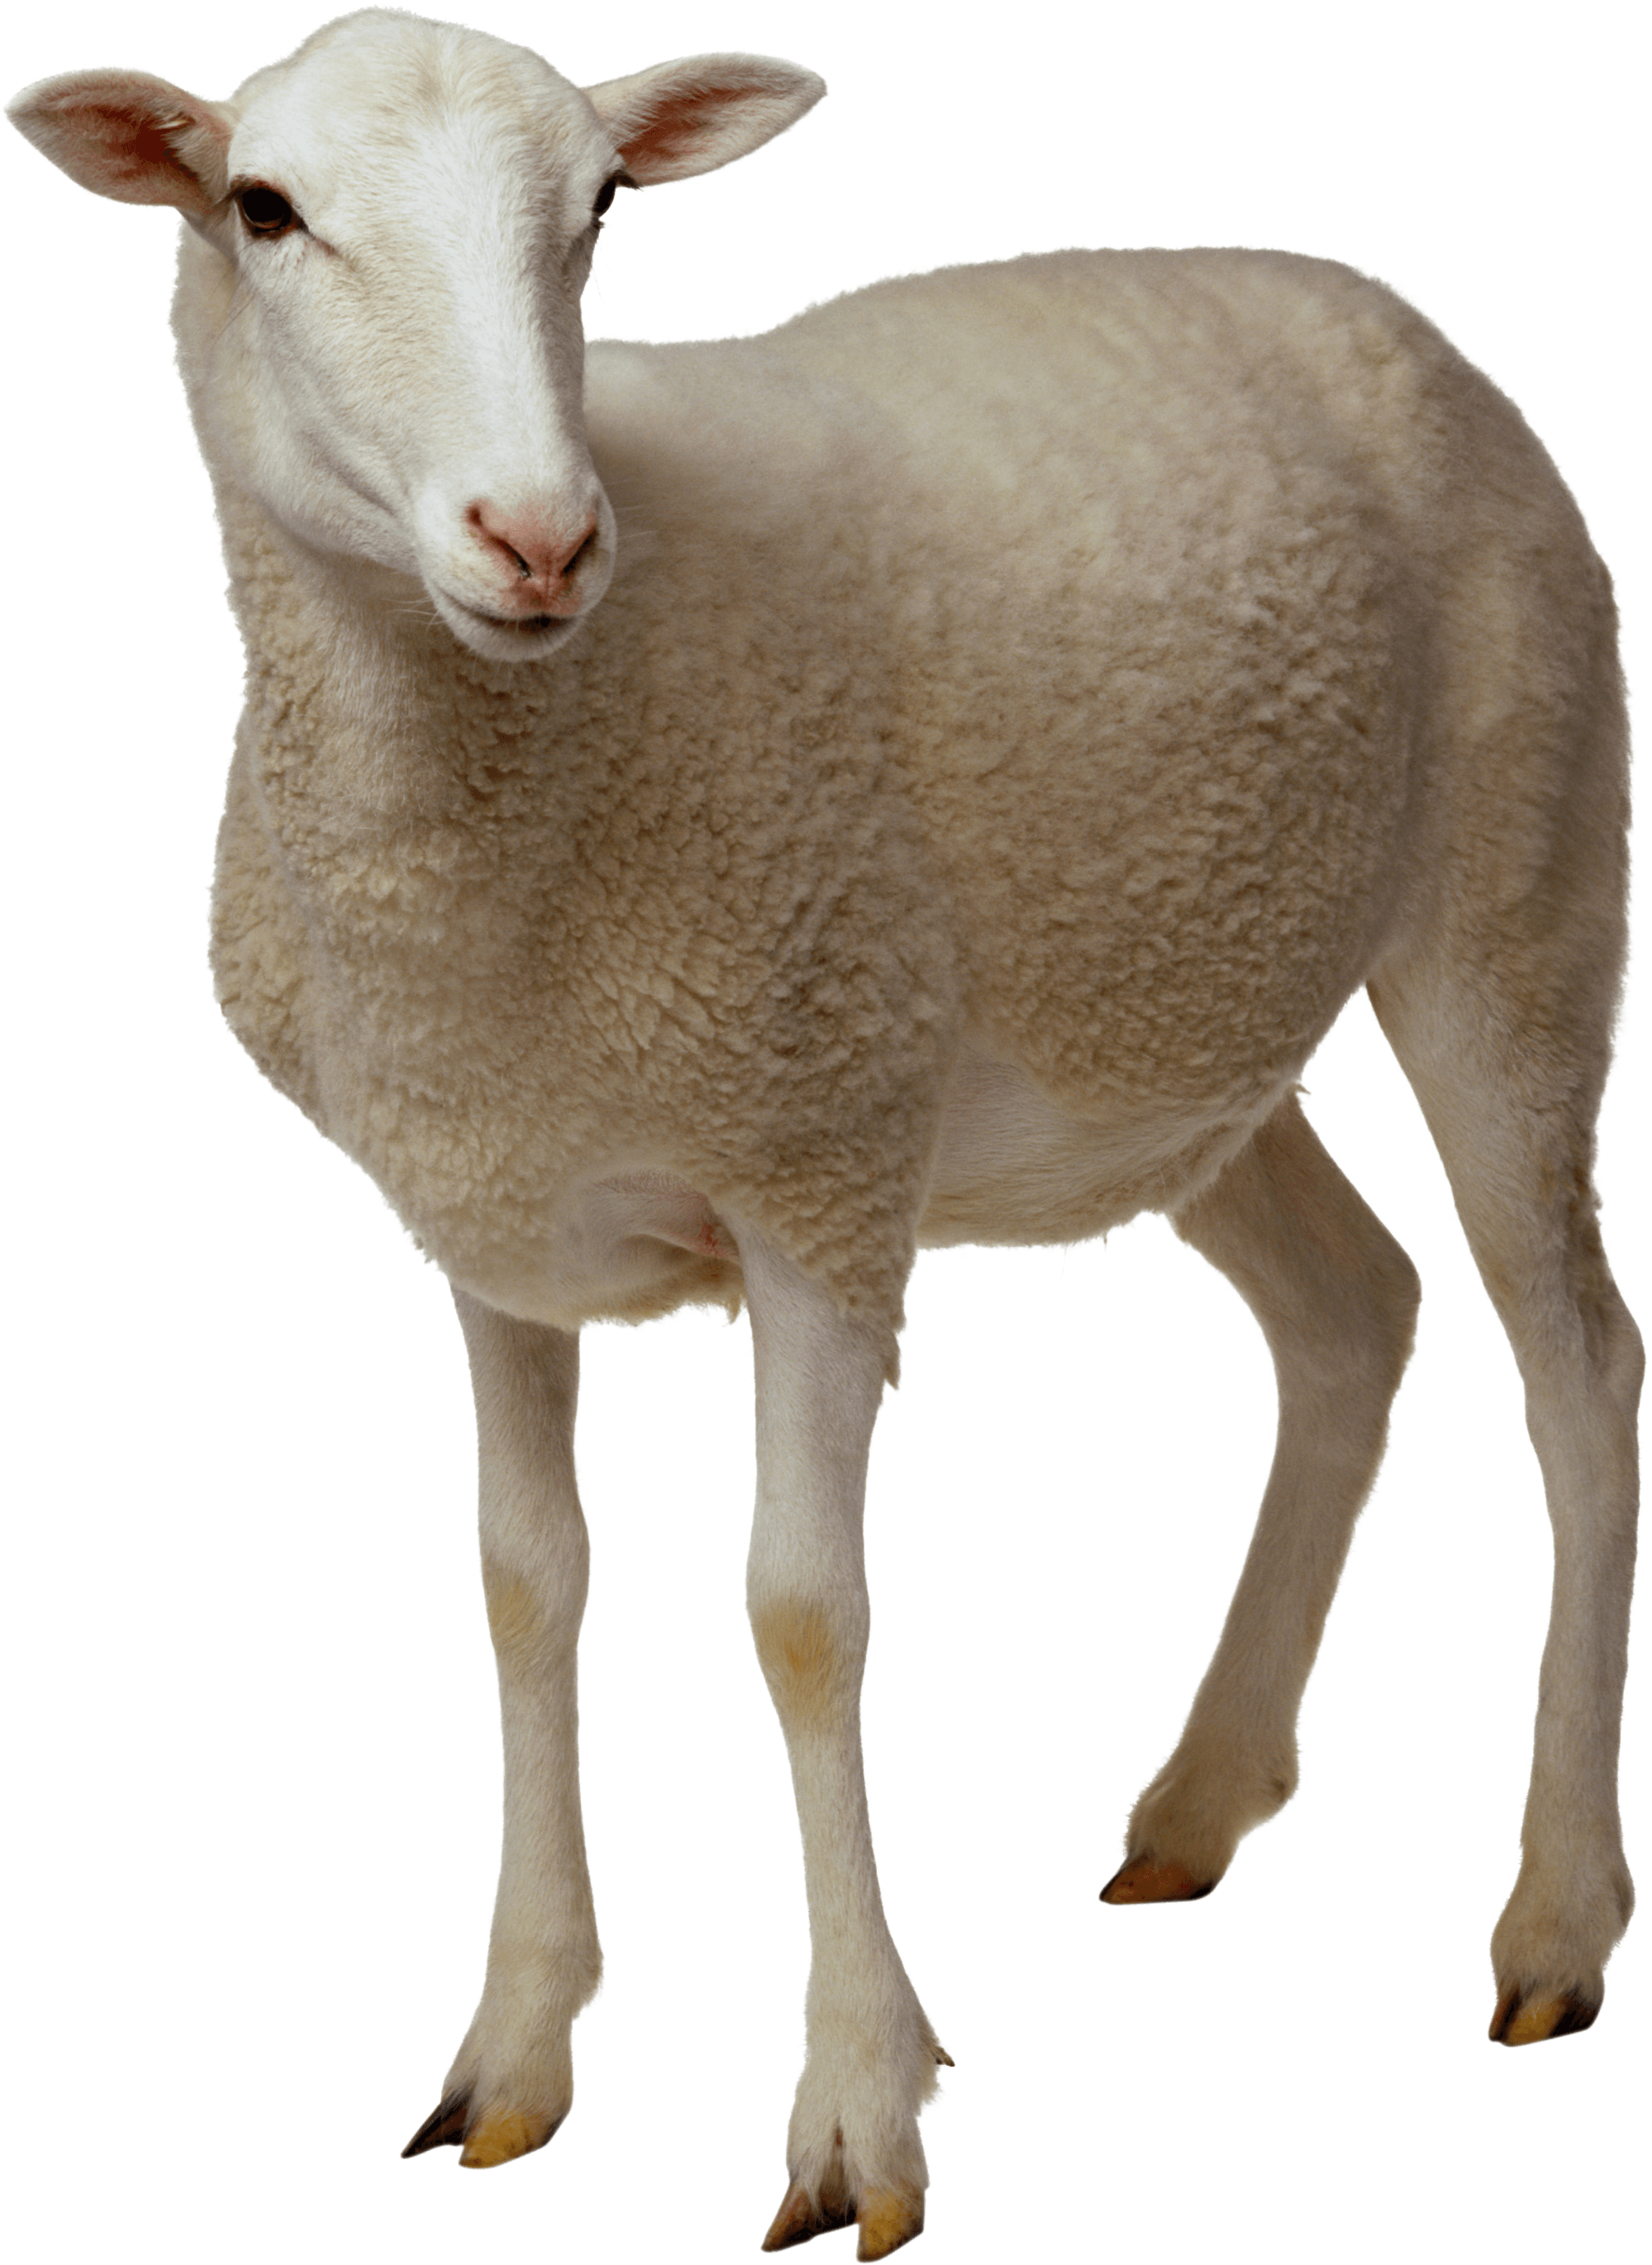 Download Sheep Png Image HQ PNG Image | FreePNGImg